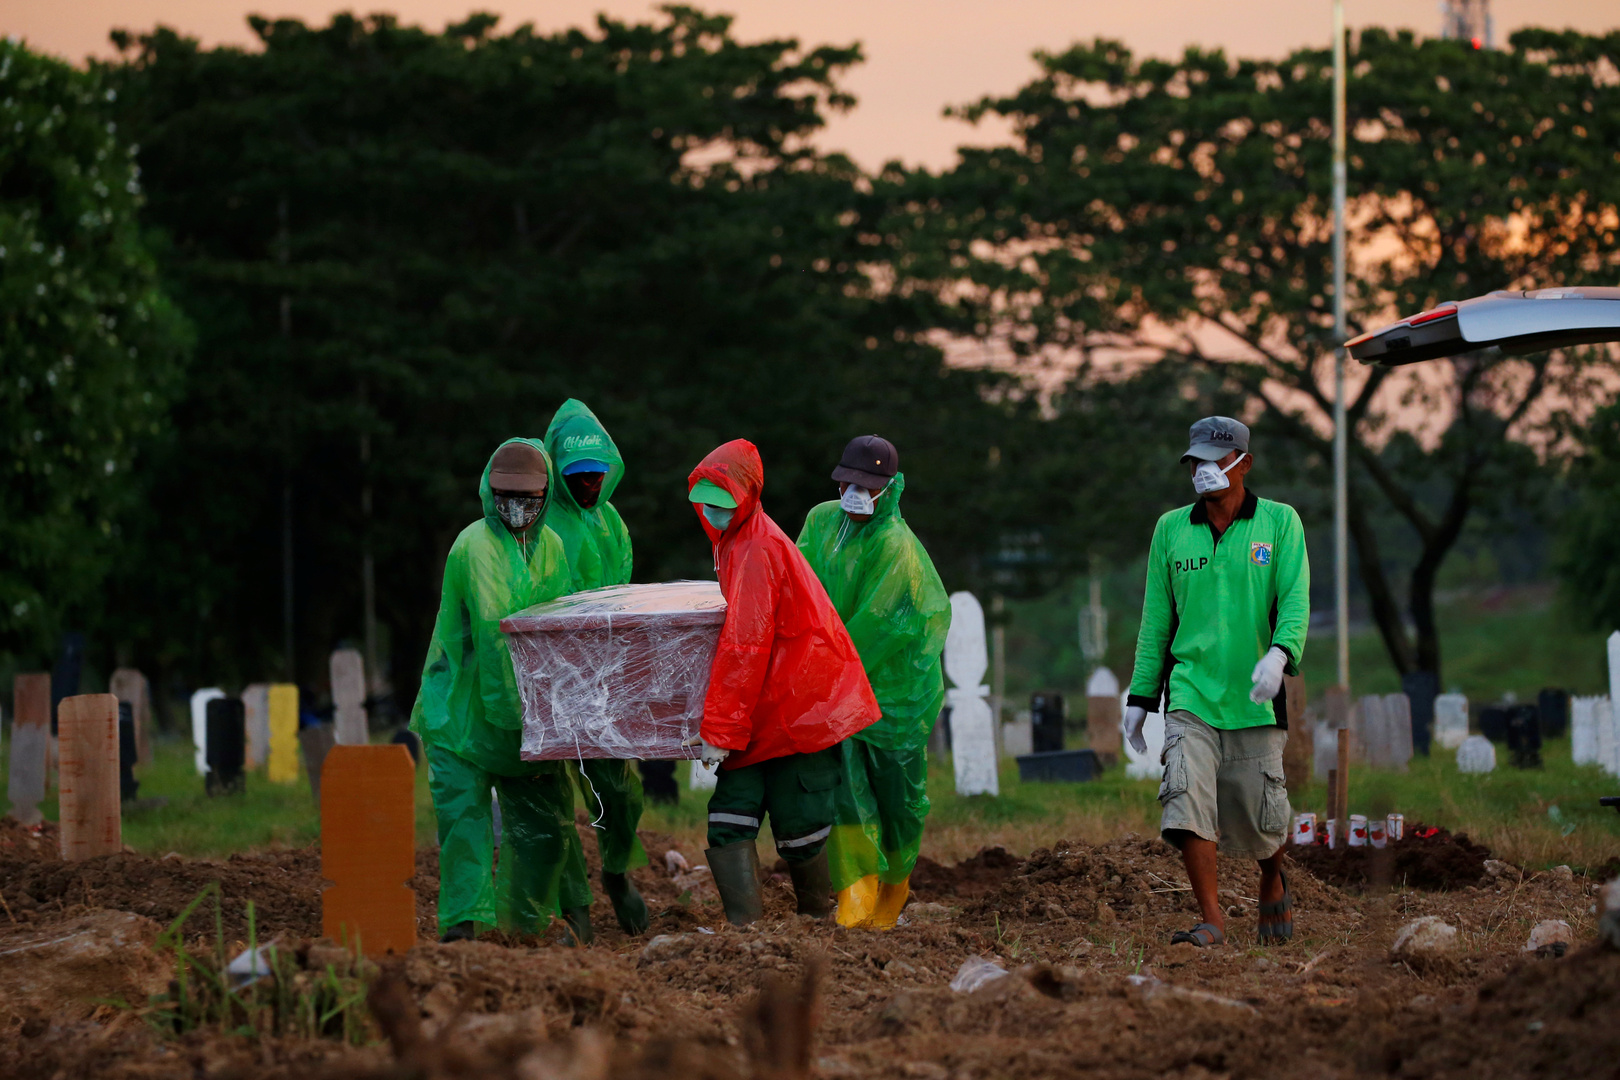 أمر مخيف يحدث في أندونيسيا يؤكد أن ضحايا فيروس كورونا ربما أكثر بكثير من المعلن عنه رسميا